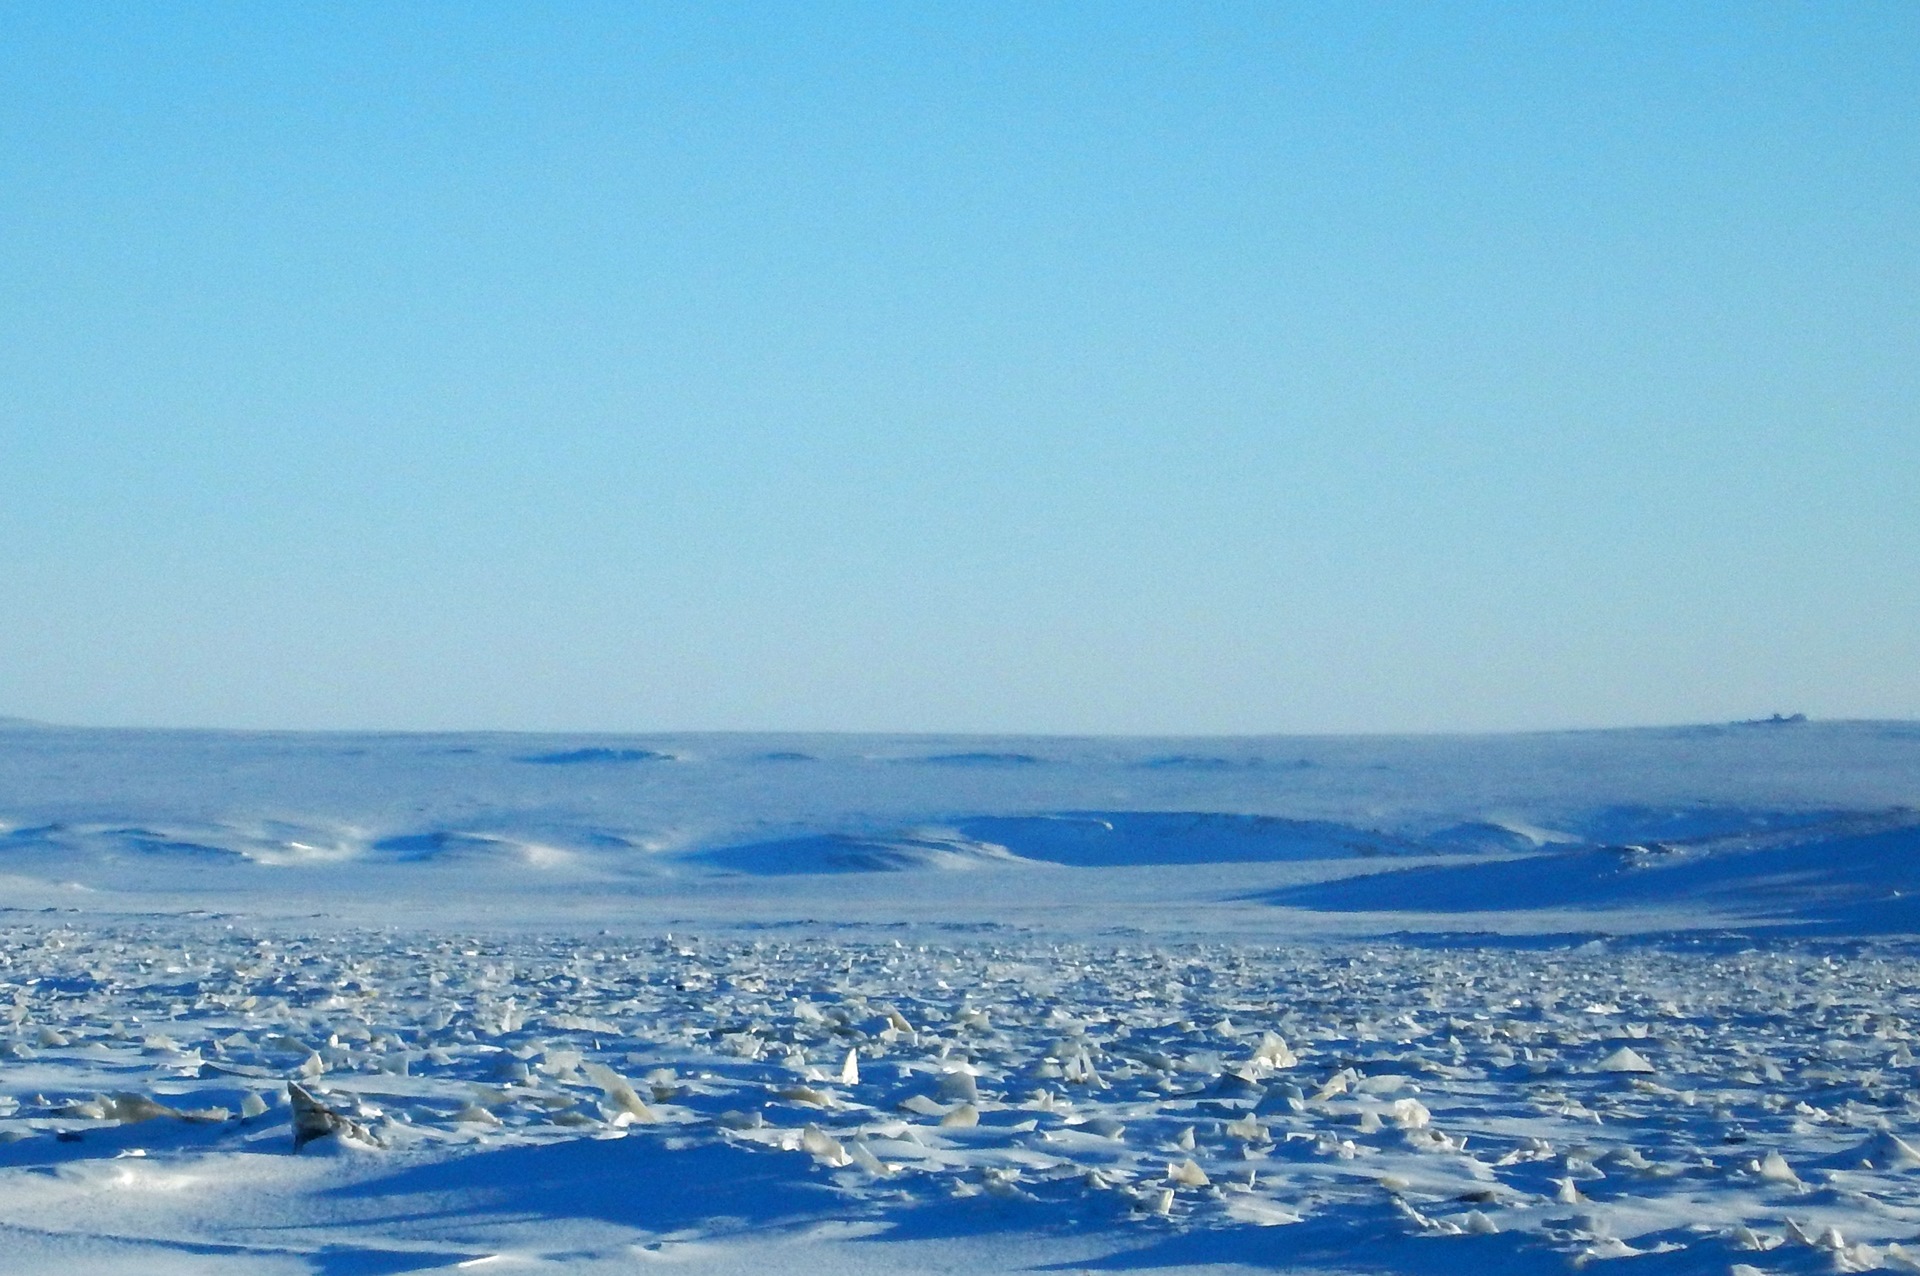 Море челюскина. Таймыр мыс Челюскин. Полуостров Таймыр мыс Челюскин. Полярная станция мыс Челюскин. Большой Арктический заповедник мыс Челюскин.